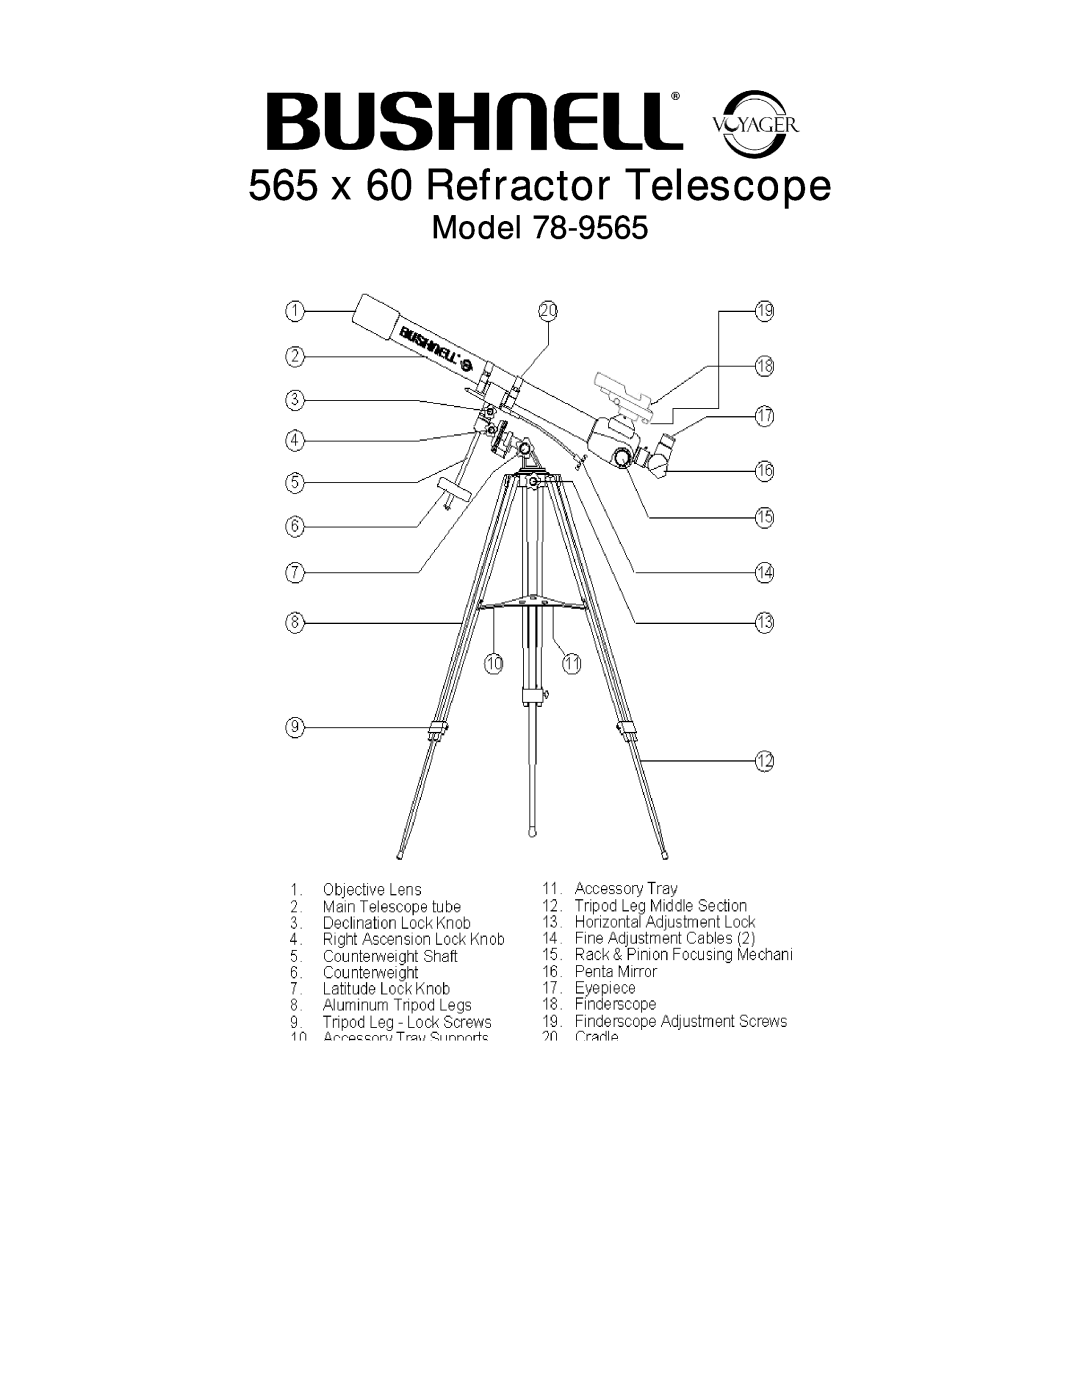 Bushnell 78-9565 manual Model, 565 x 60 Refractor Telescope 